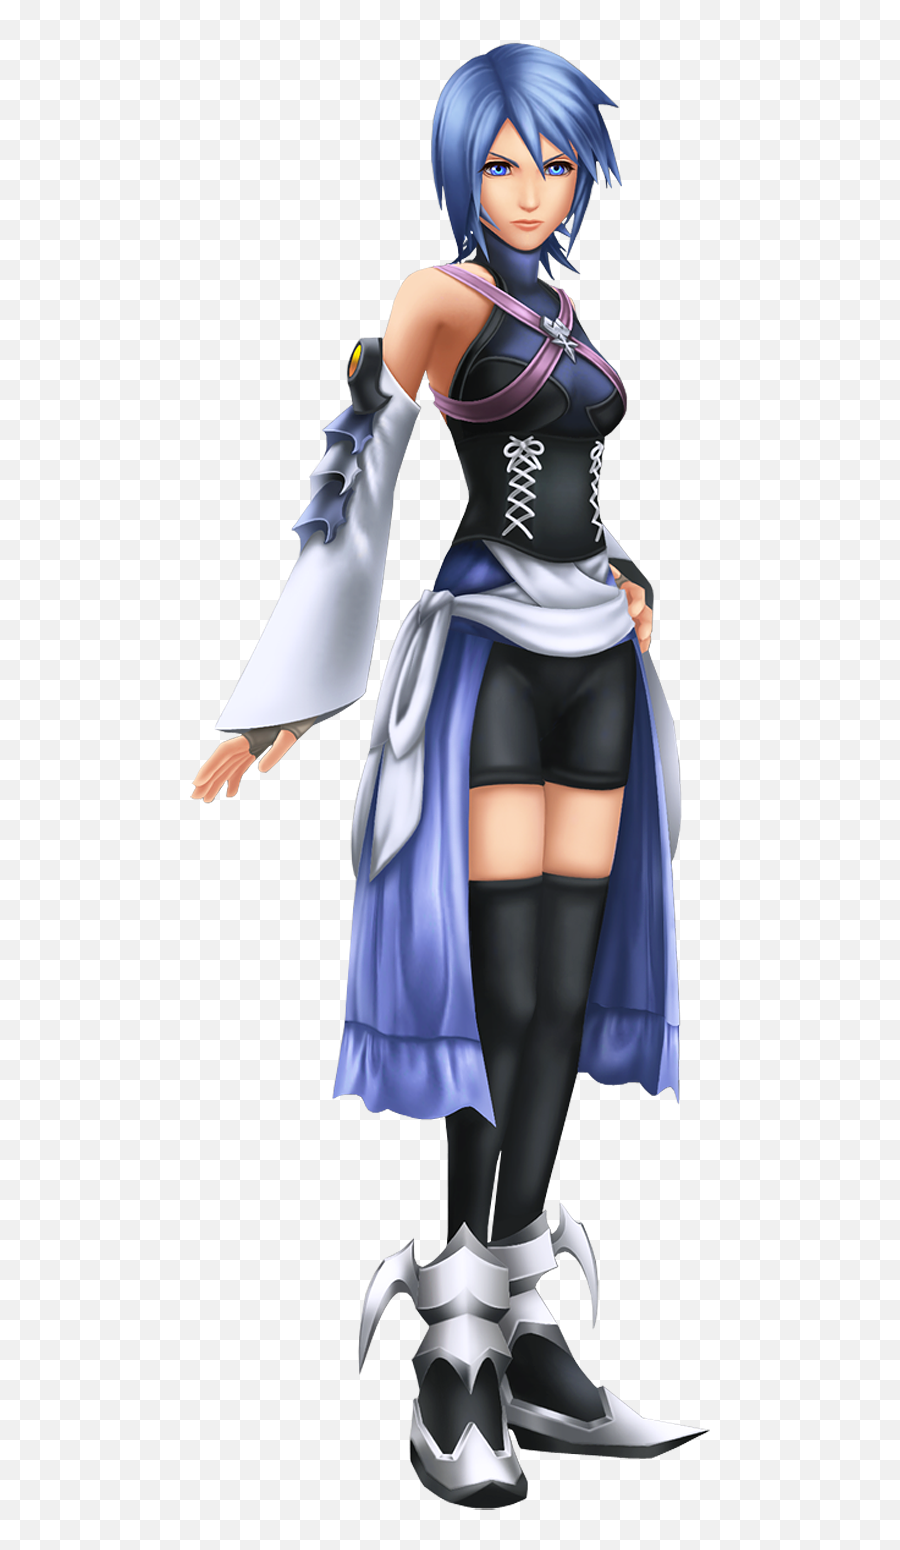 Aqua - Kingdom Hearts Obi Wan Kenobi Emoji,Kingdom Hearts Png